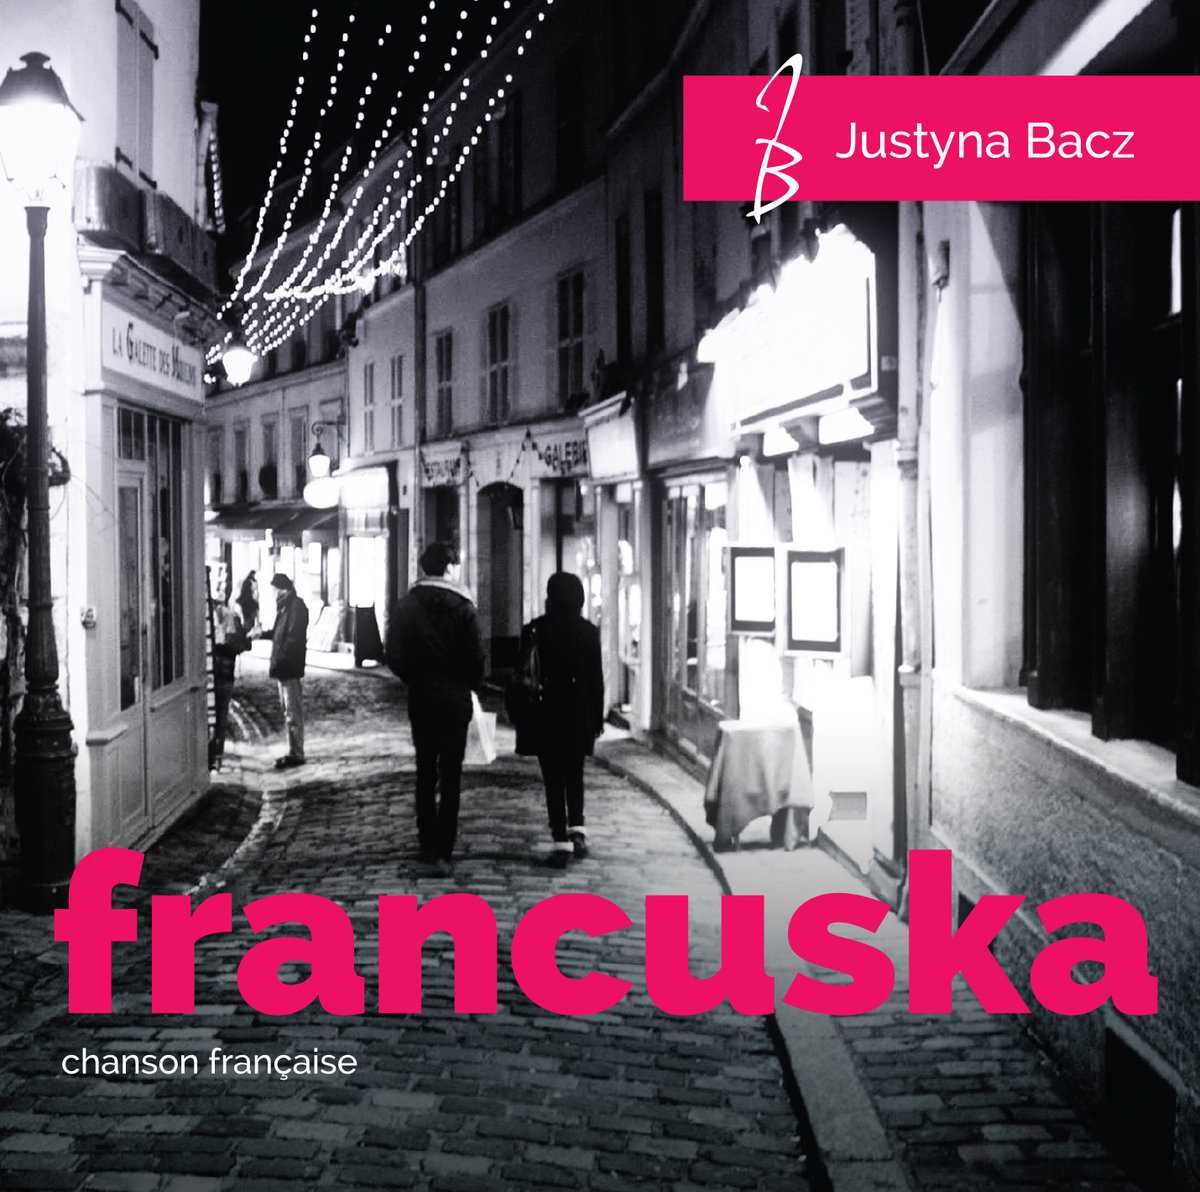 Justyna Bacz - Francuska Chanson Francaise CD w folii